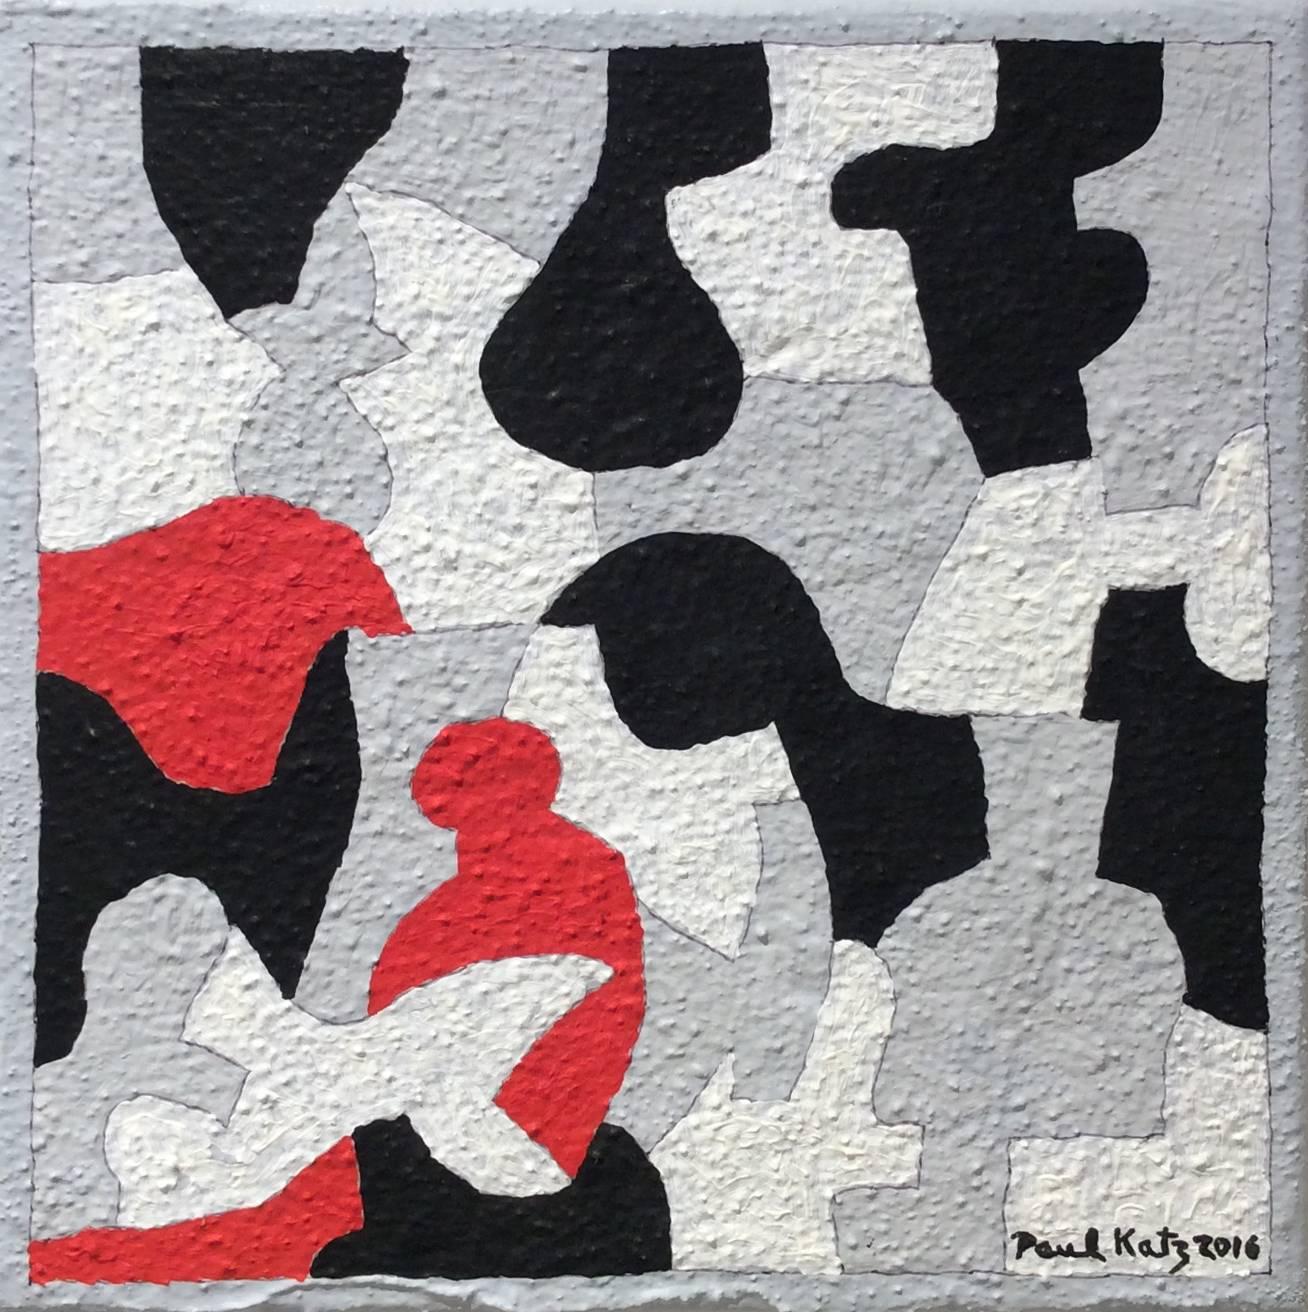 Abstract Painting Paul Katz - Interlock n° 35 (peinture abstraite rouge, noire, blanche et grise sur toile